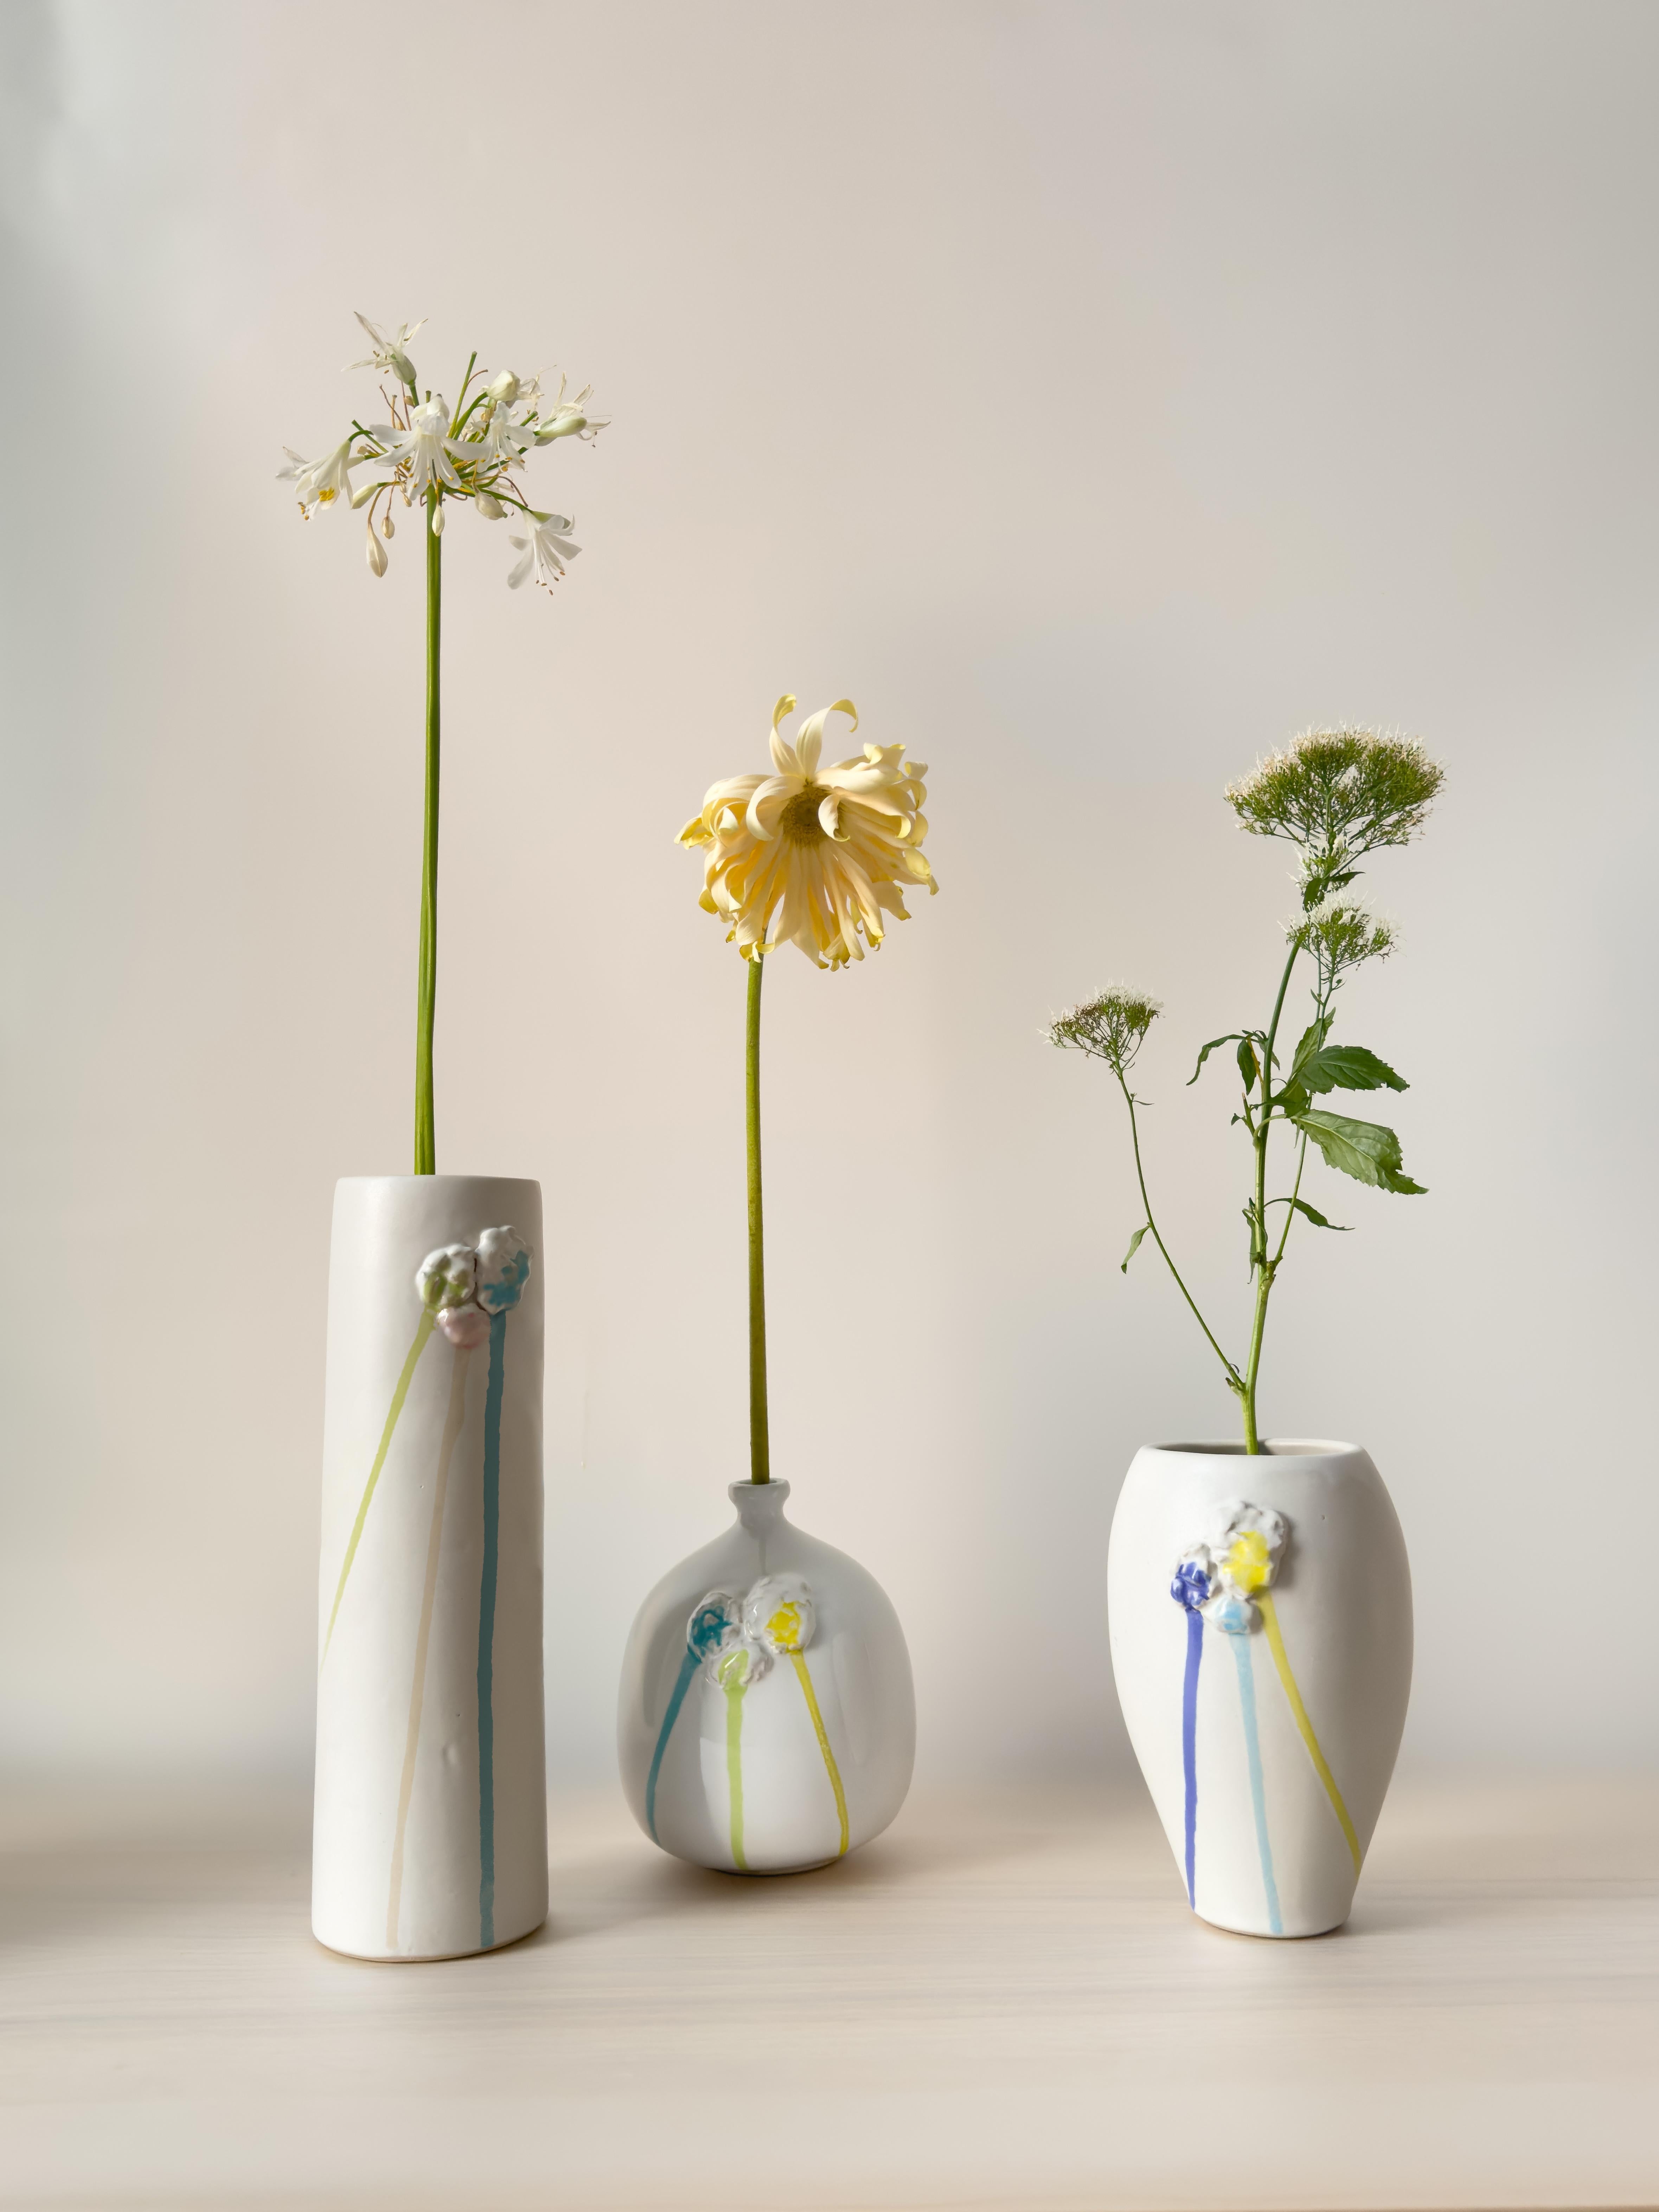 Lernen Sie die Medium Vase aus unserer Striving for Imperfection Collection'S kennen. Dieses Stück steht auf 7 Zoll, und verfügt über die perfekte Breite, um einen robusten Strauß Ihrer Lieblingsstängel unterzubringen. 

Die Stücke dieser